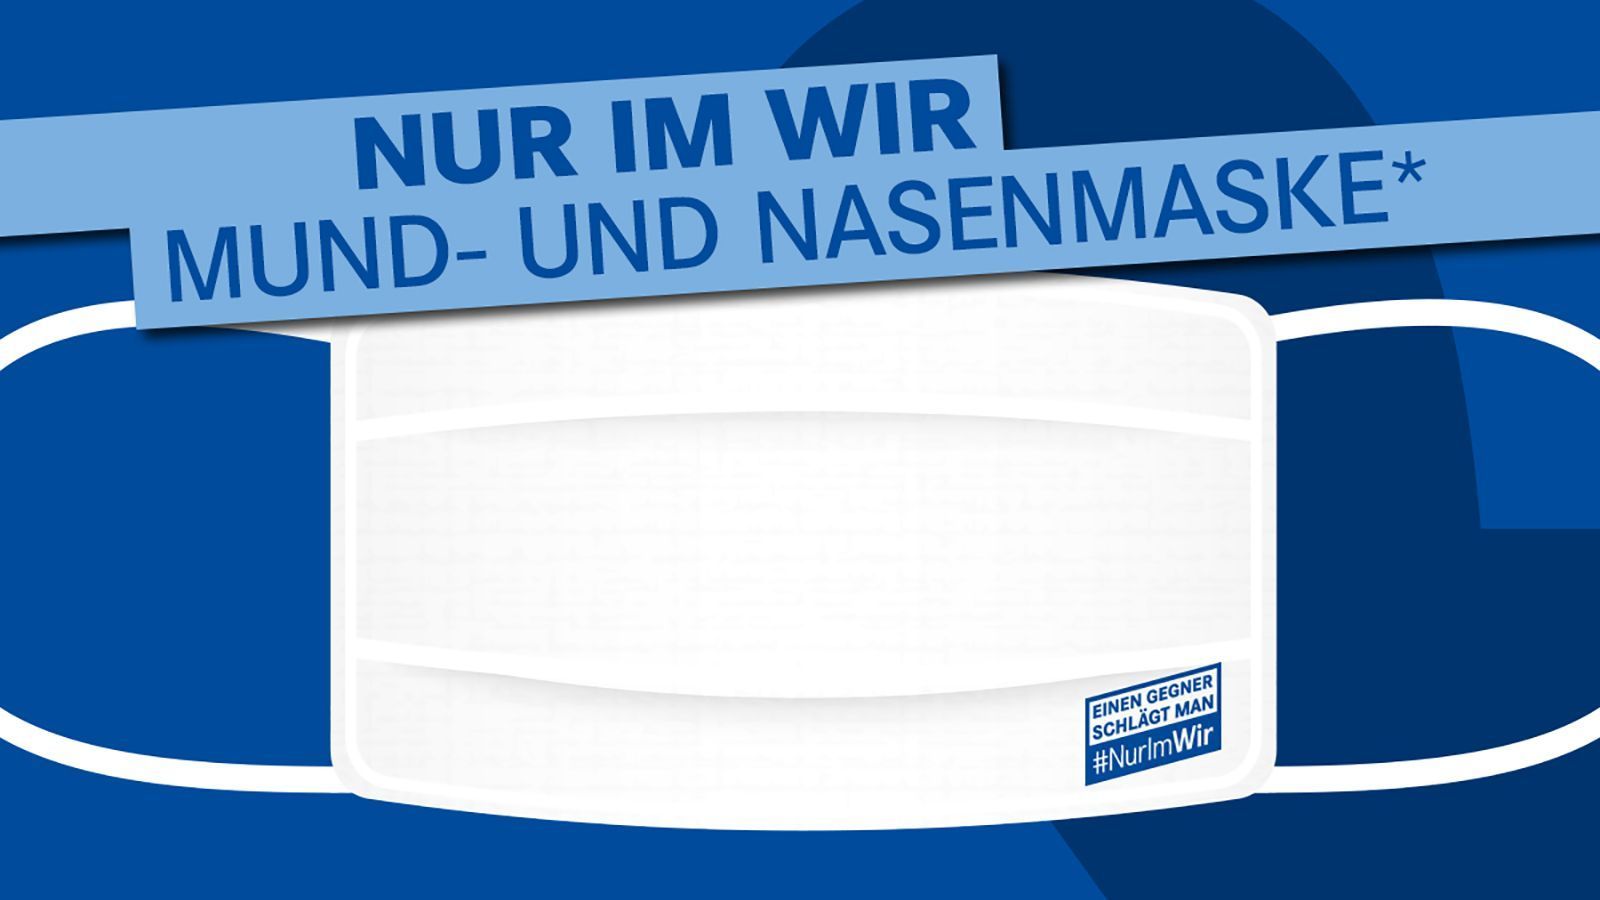 
                <strong>FC Schalke 04</strong><br>
                Auf Schalke gibt es die Masken gratis zu jeder Bestellung. Dementsprechend schlicht sind sie auch gehalten. Der Zweck steht ja auch im Vordergrund!
              